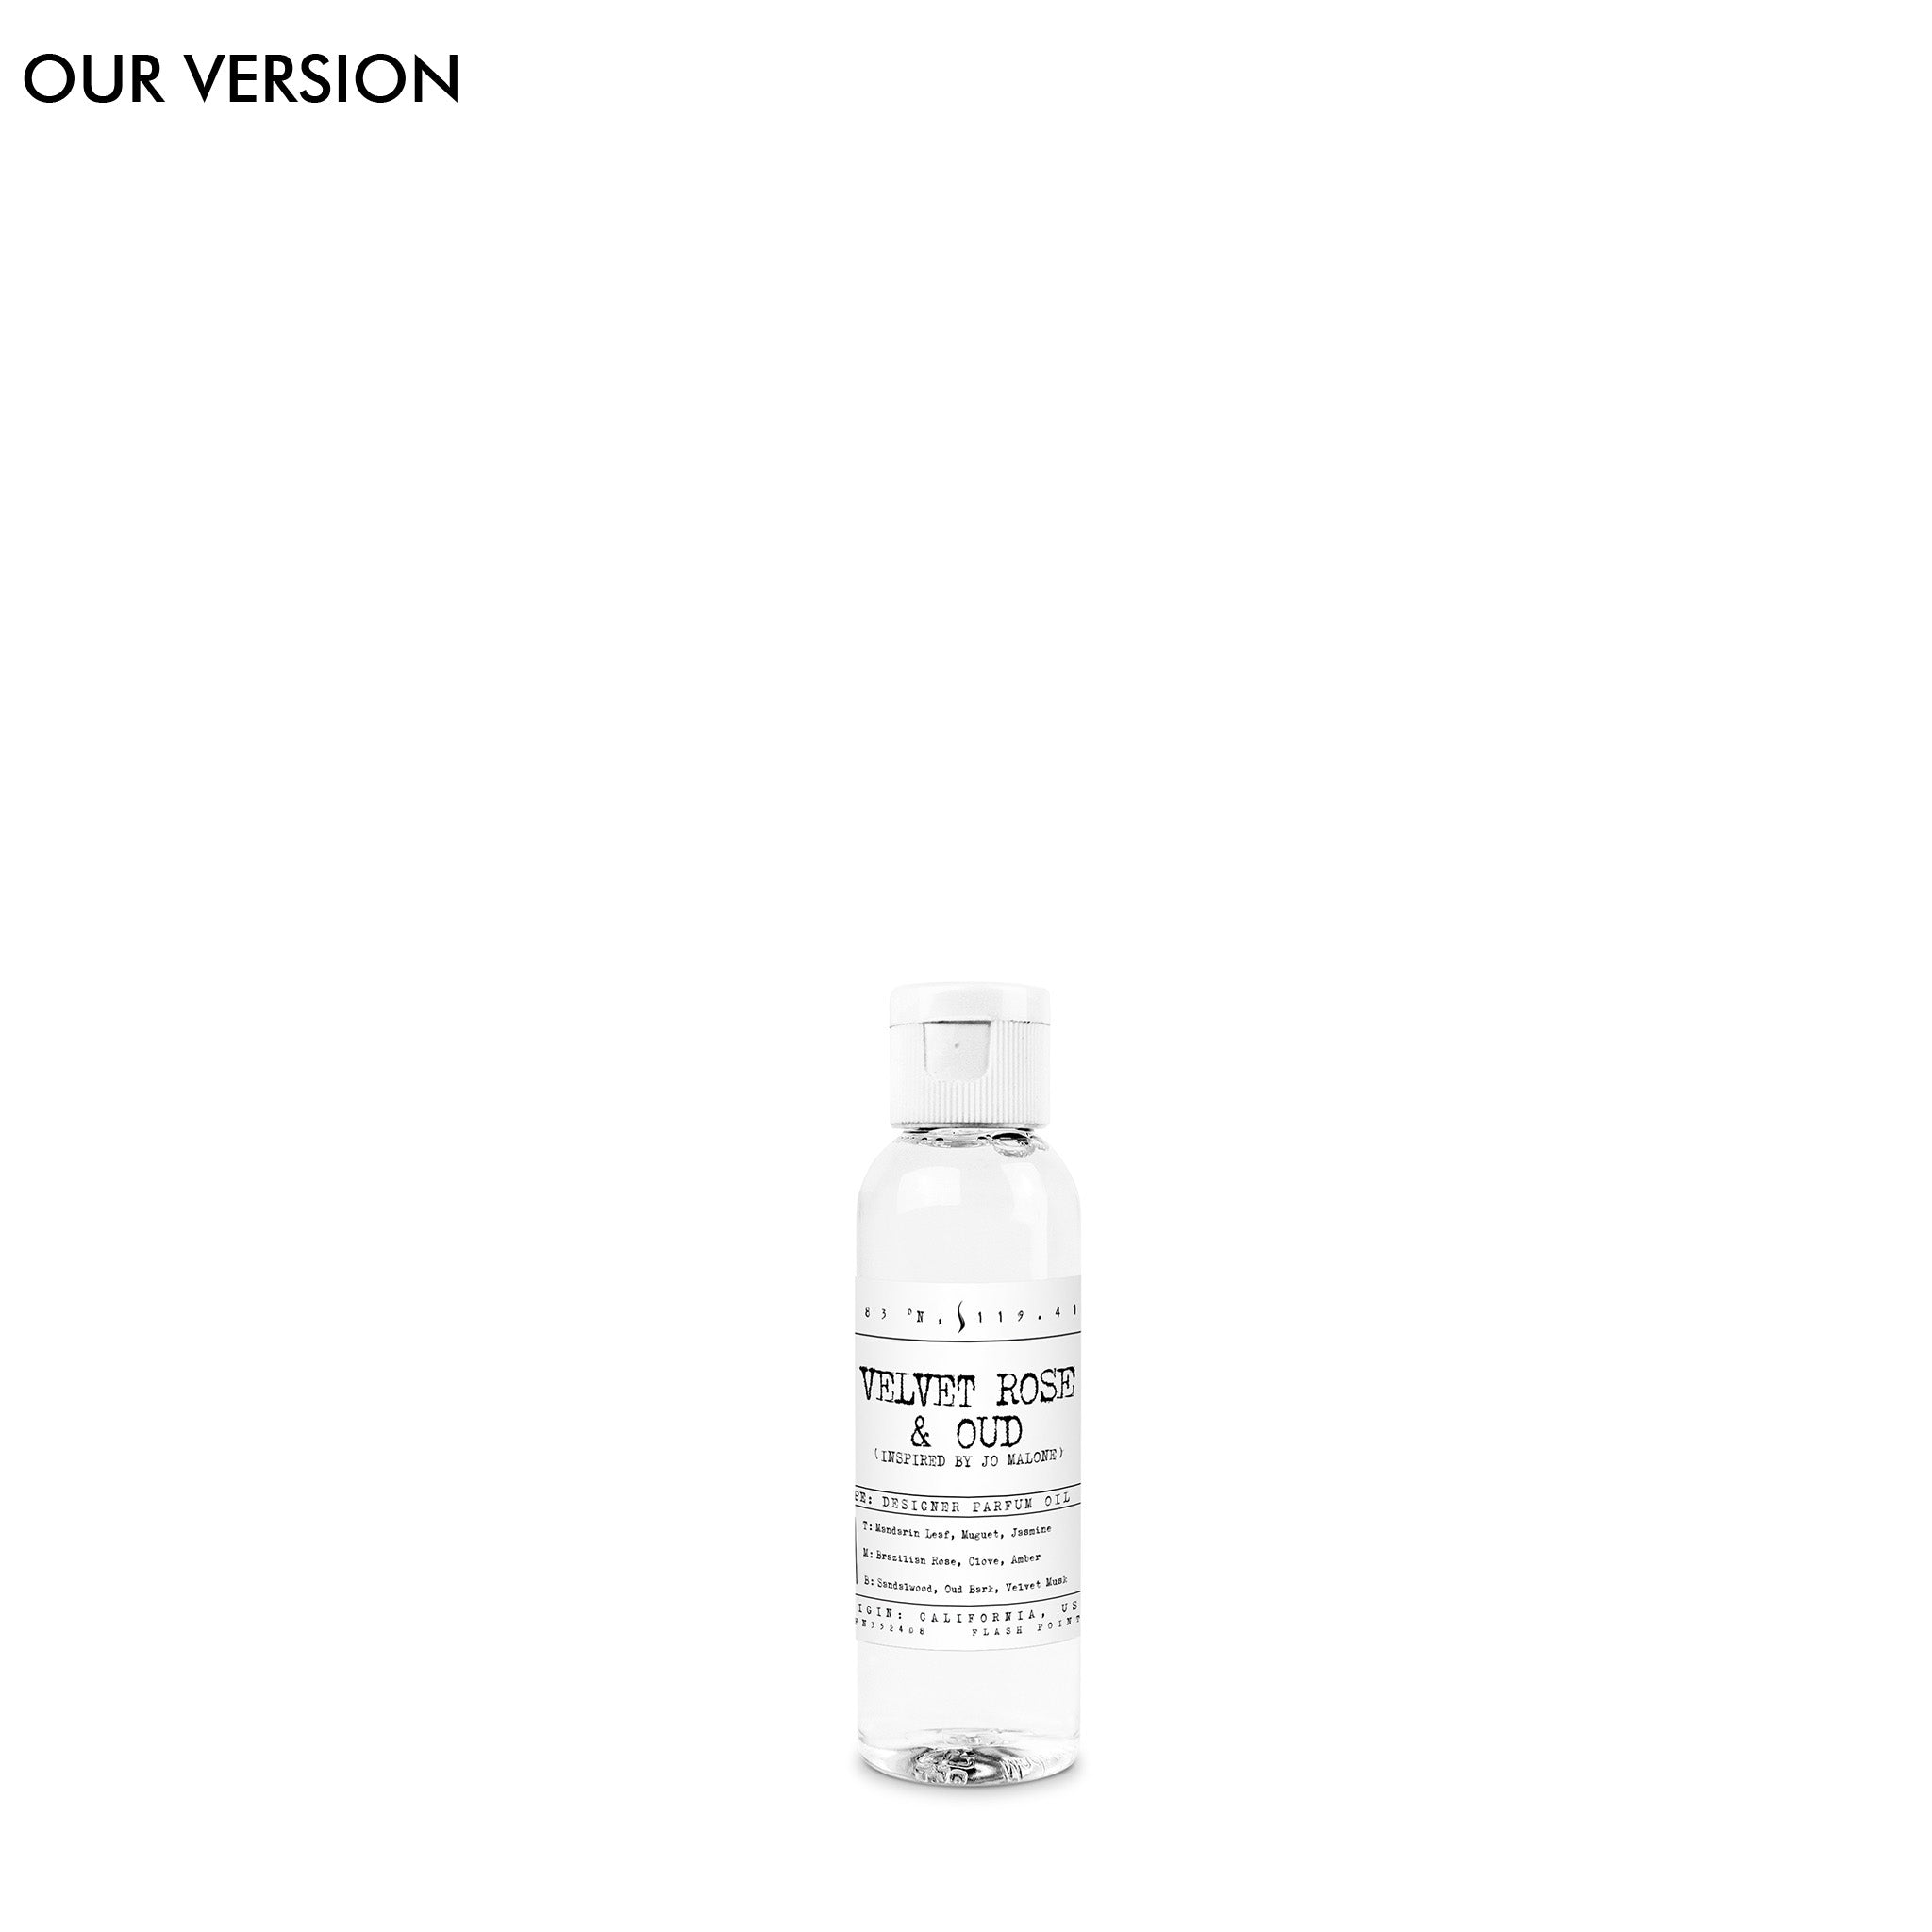 Velvet Rose & Oud (our version) Fragrance Oil